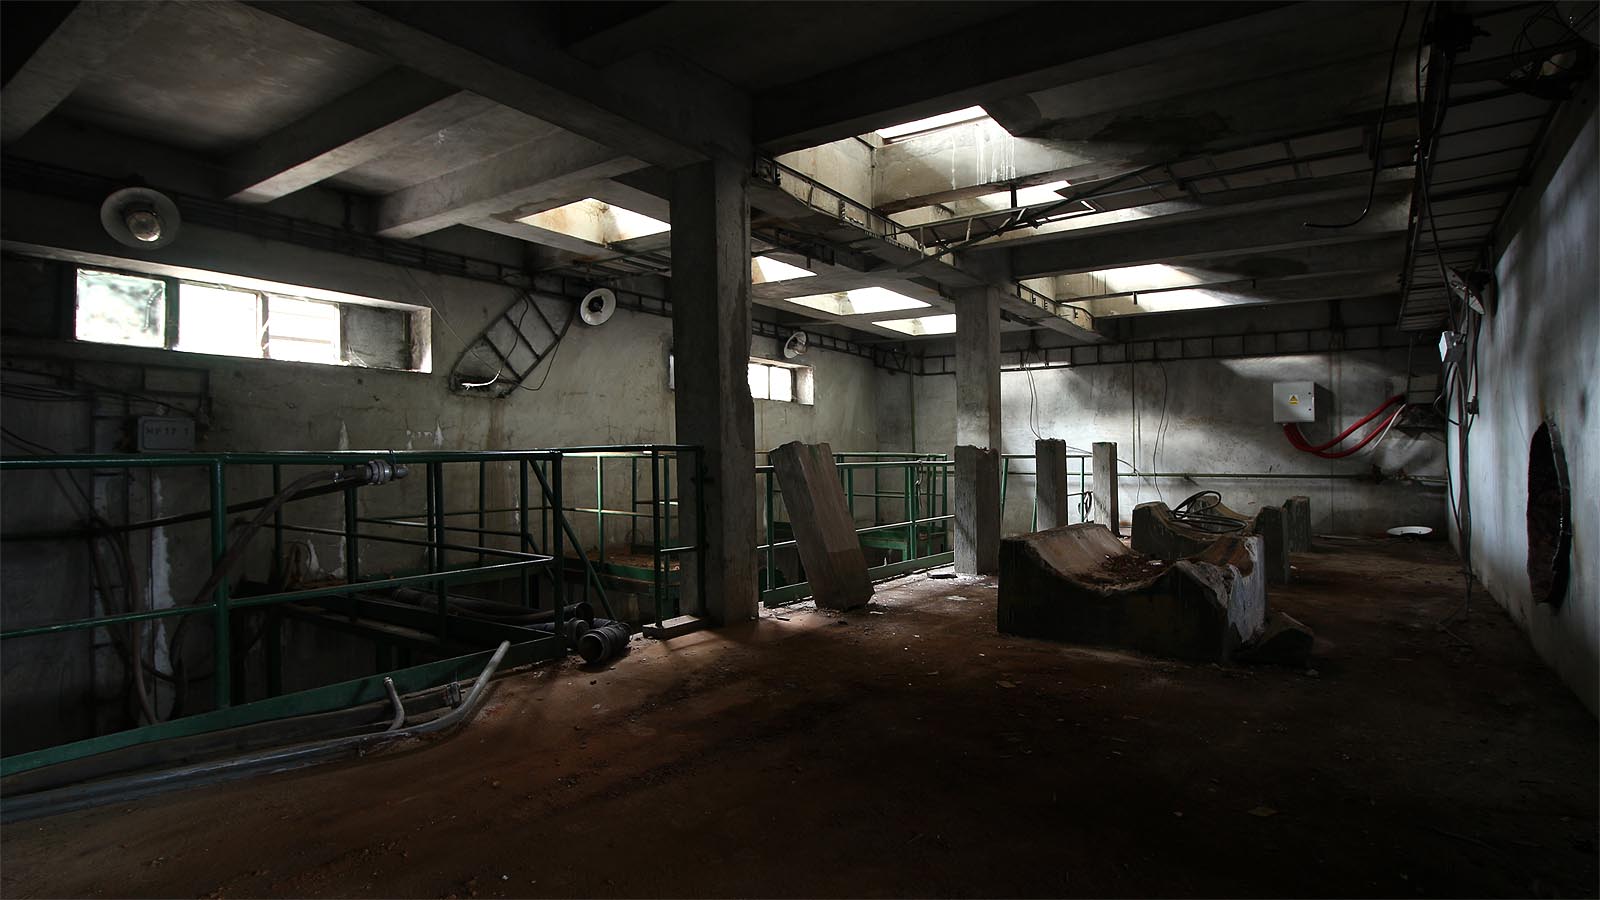 Celkový pohled na podzemní prostory čerpací stanice Kamenný mlýn. Vpravo kruhový otvor, kterým potrubí vcházelo do dalších podzemních prostor.